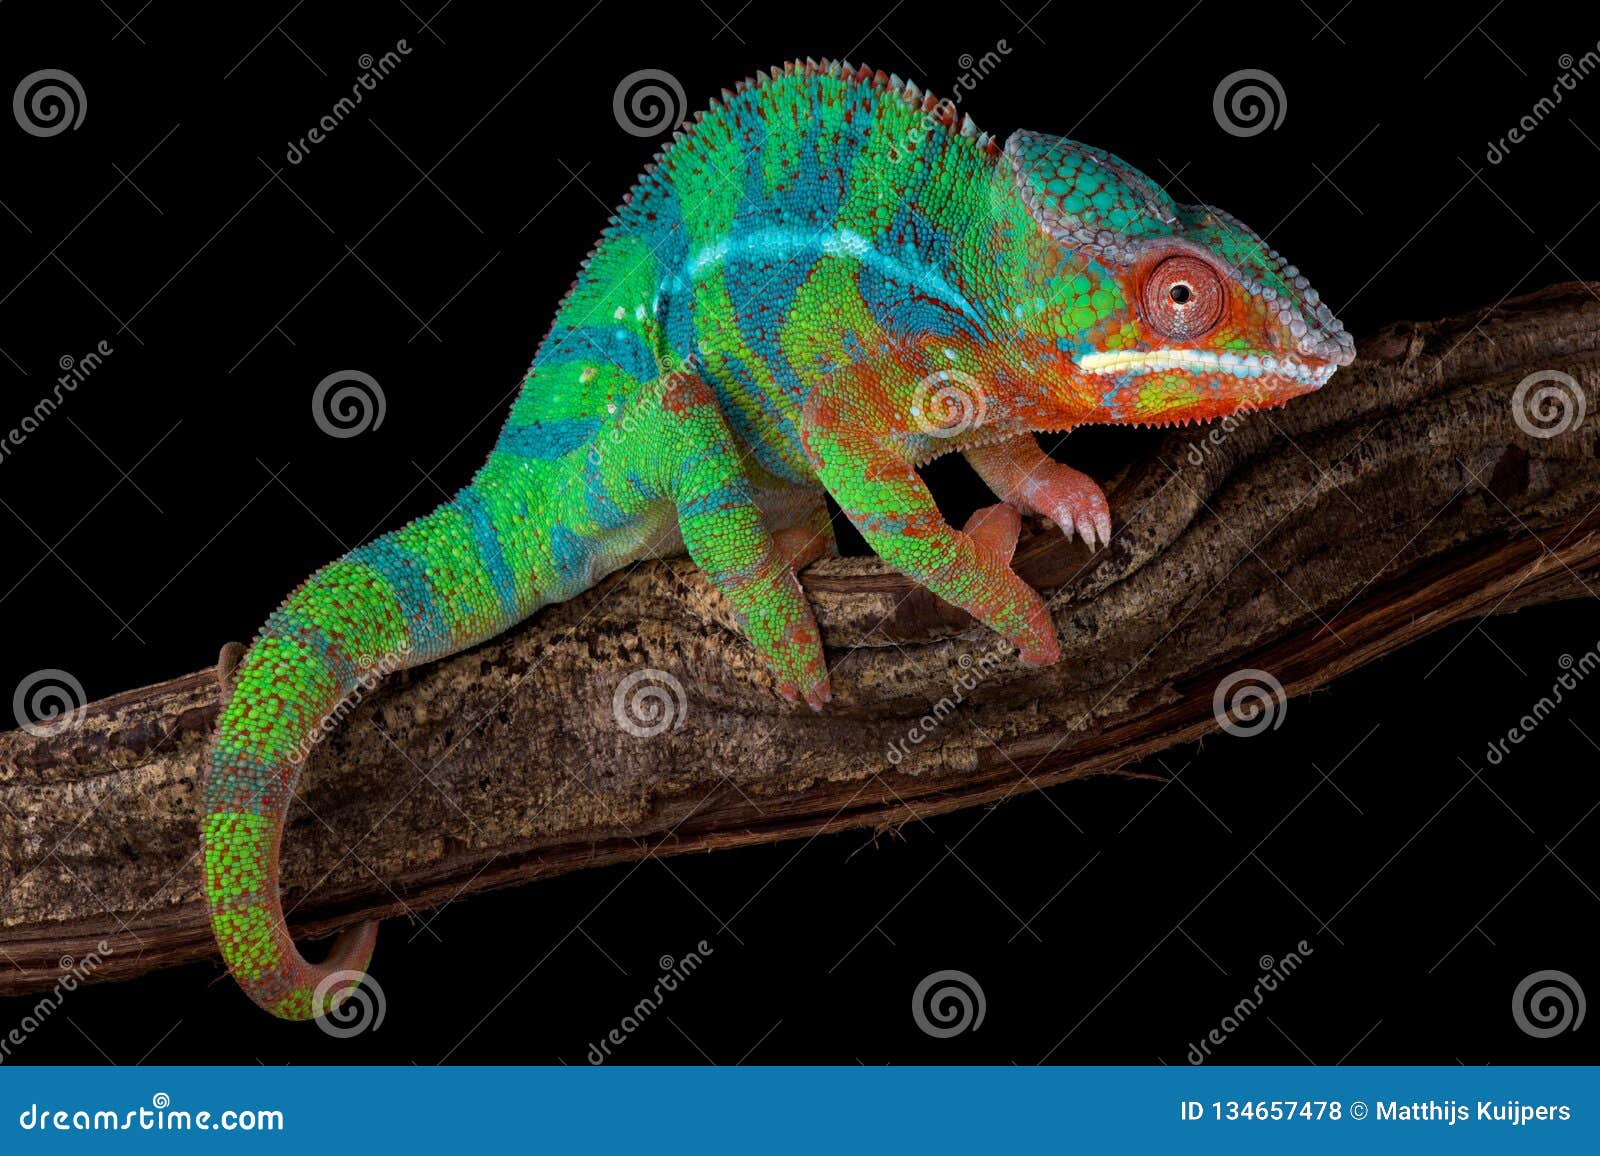 panther chameleon furcifer pardalis